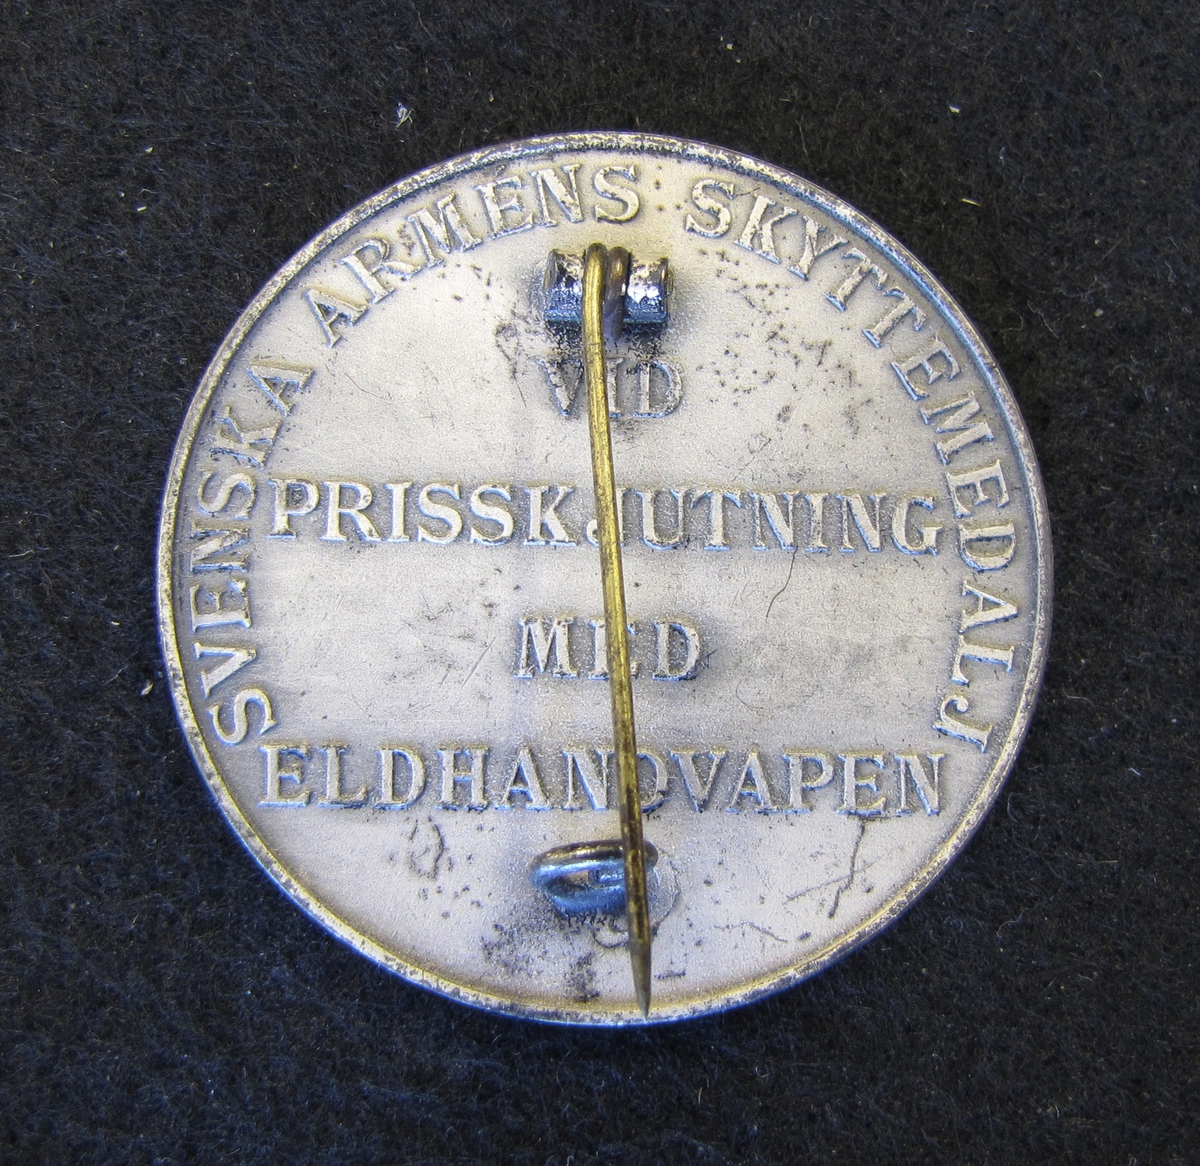 Svenska armens skyttemedalj tilldelad Karl-Fredrik Nyström "vid prisskjutning med eldhandvapen".

På medaljens åtsida, två korslagda gevär- Ovanför dessa en krona. Bakom gevären en lagerkrans som är träd genom två kronor. En tredje ligger ovanför där lagerkransen knyts samman av ett band.

Medaljen ingår i en samling märken och medaljer sittande på en tavla med märken, framförallt skyttemärken.

Karl-Fredrik Nyström var aktiv fritidsskytt och var en av de drivande för att starta Vänersborgs skytteklubb.